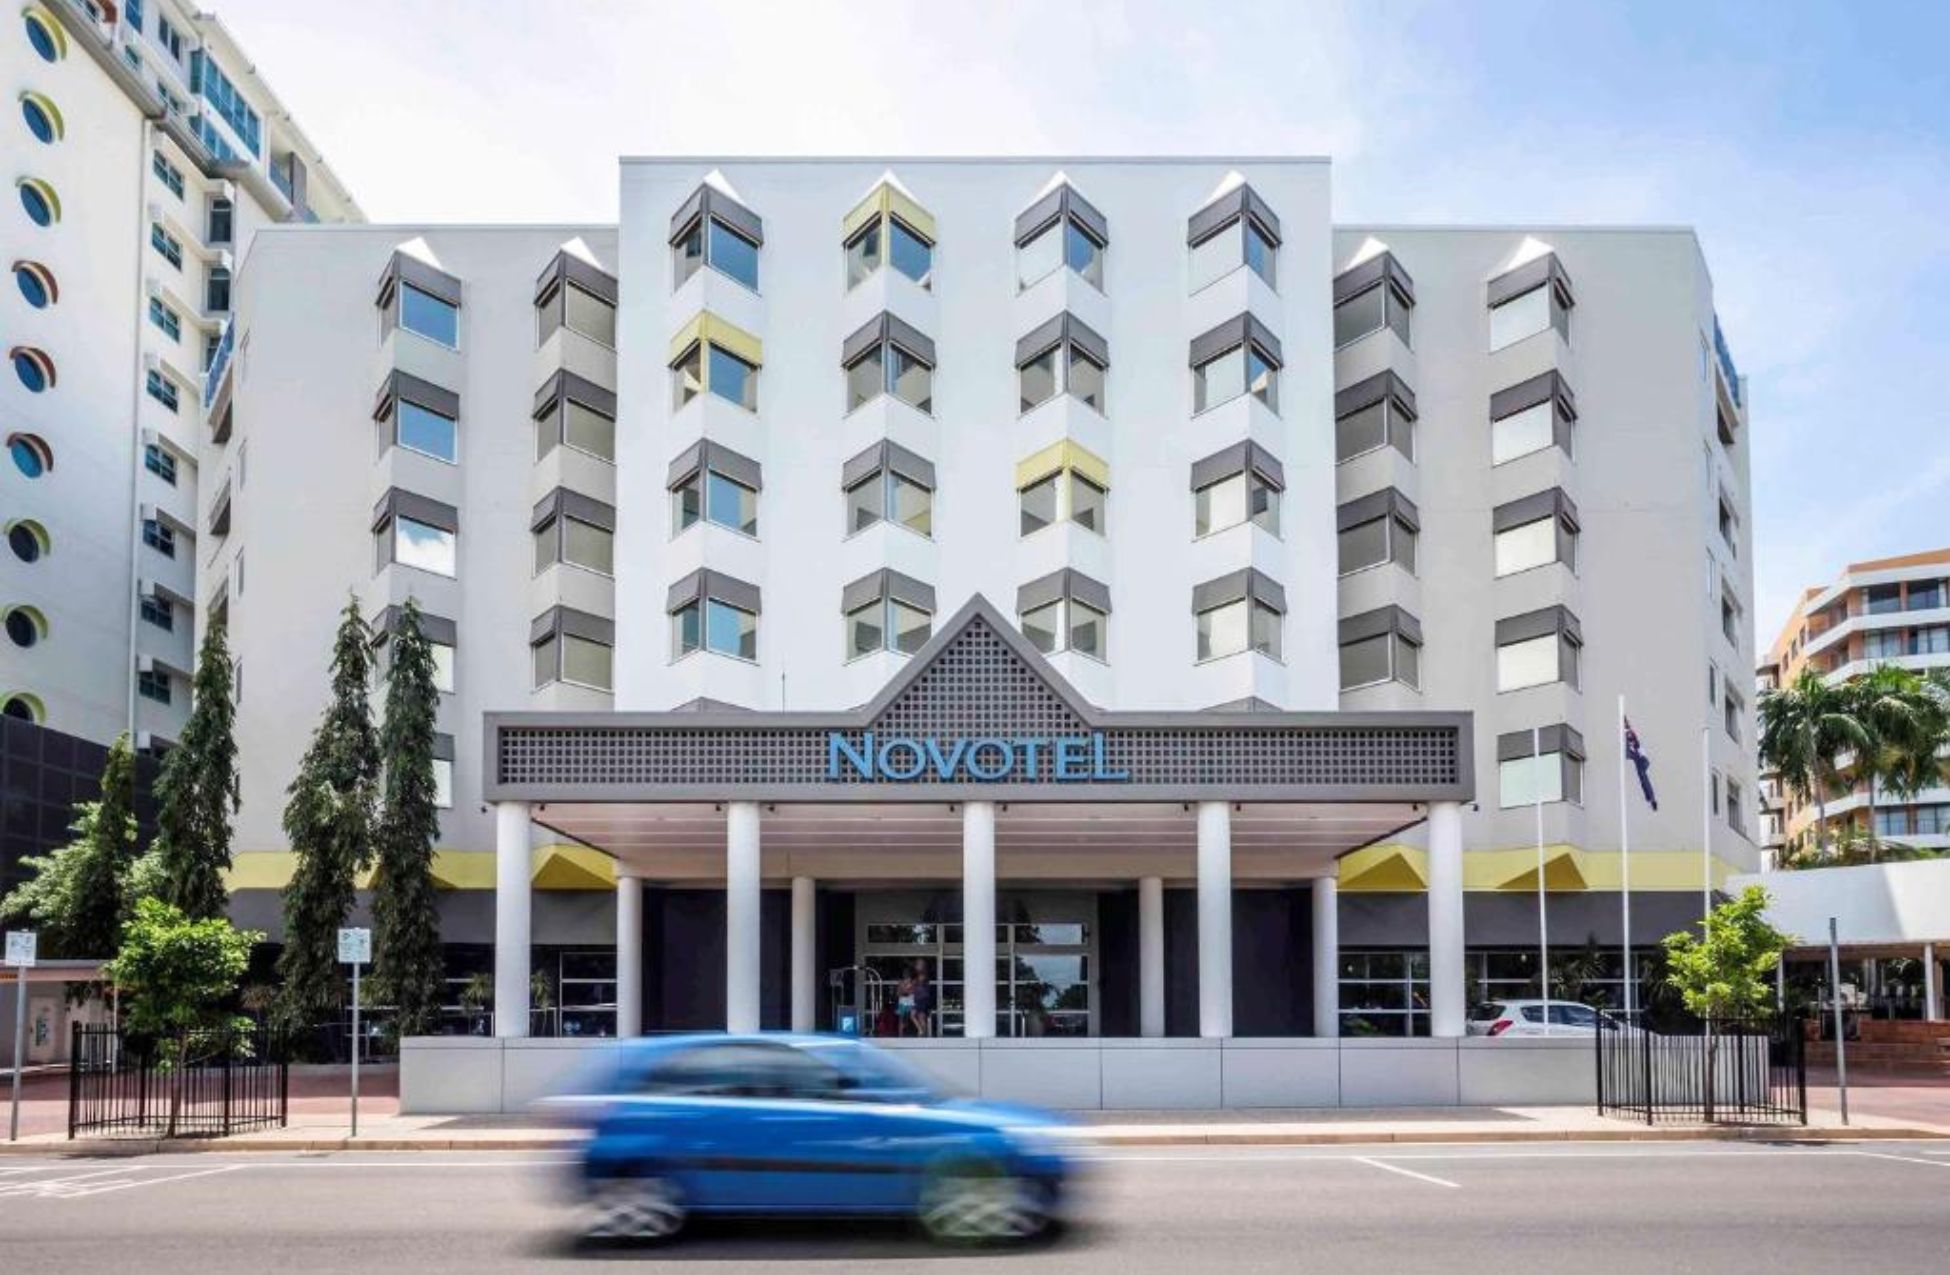 Novotel Darwin - Best Hotels In Darwin